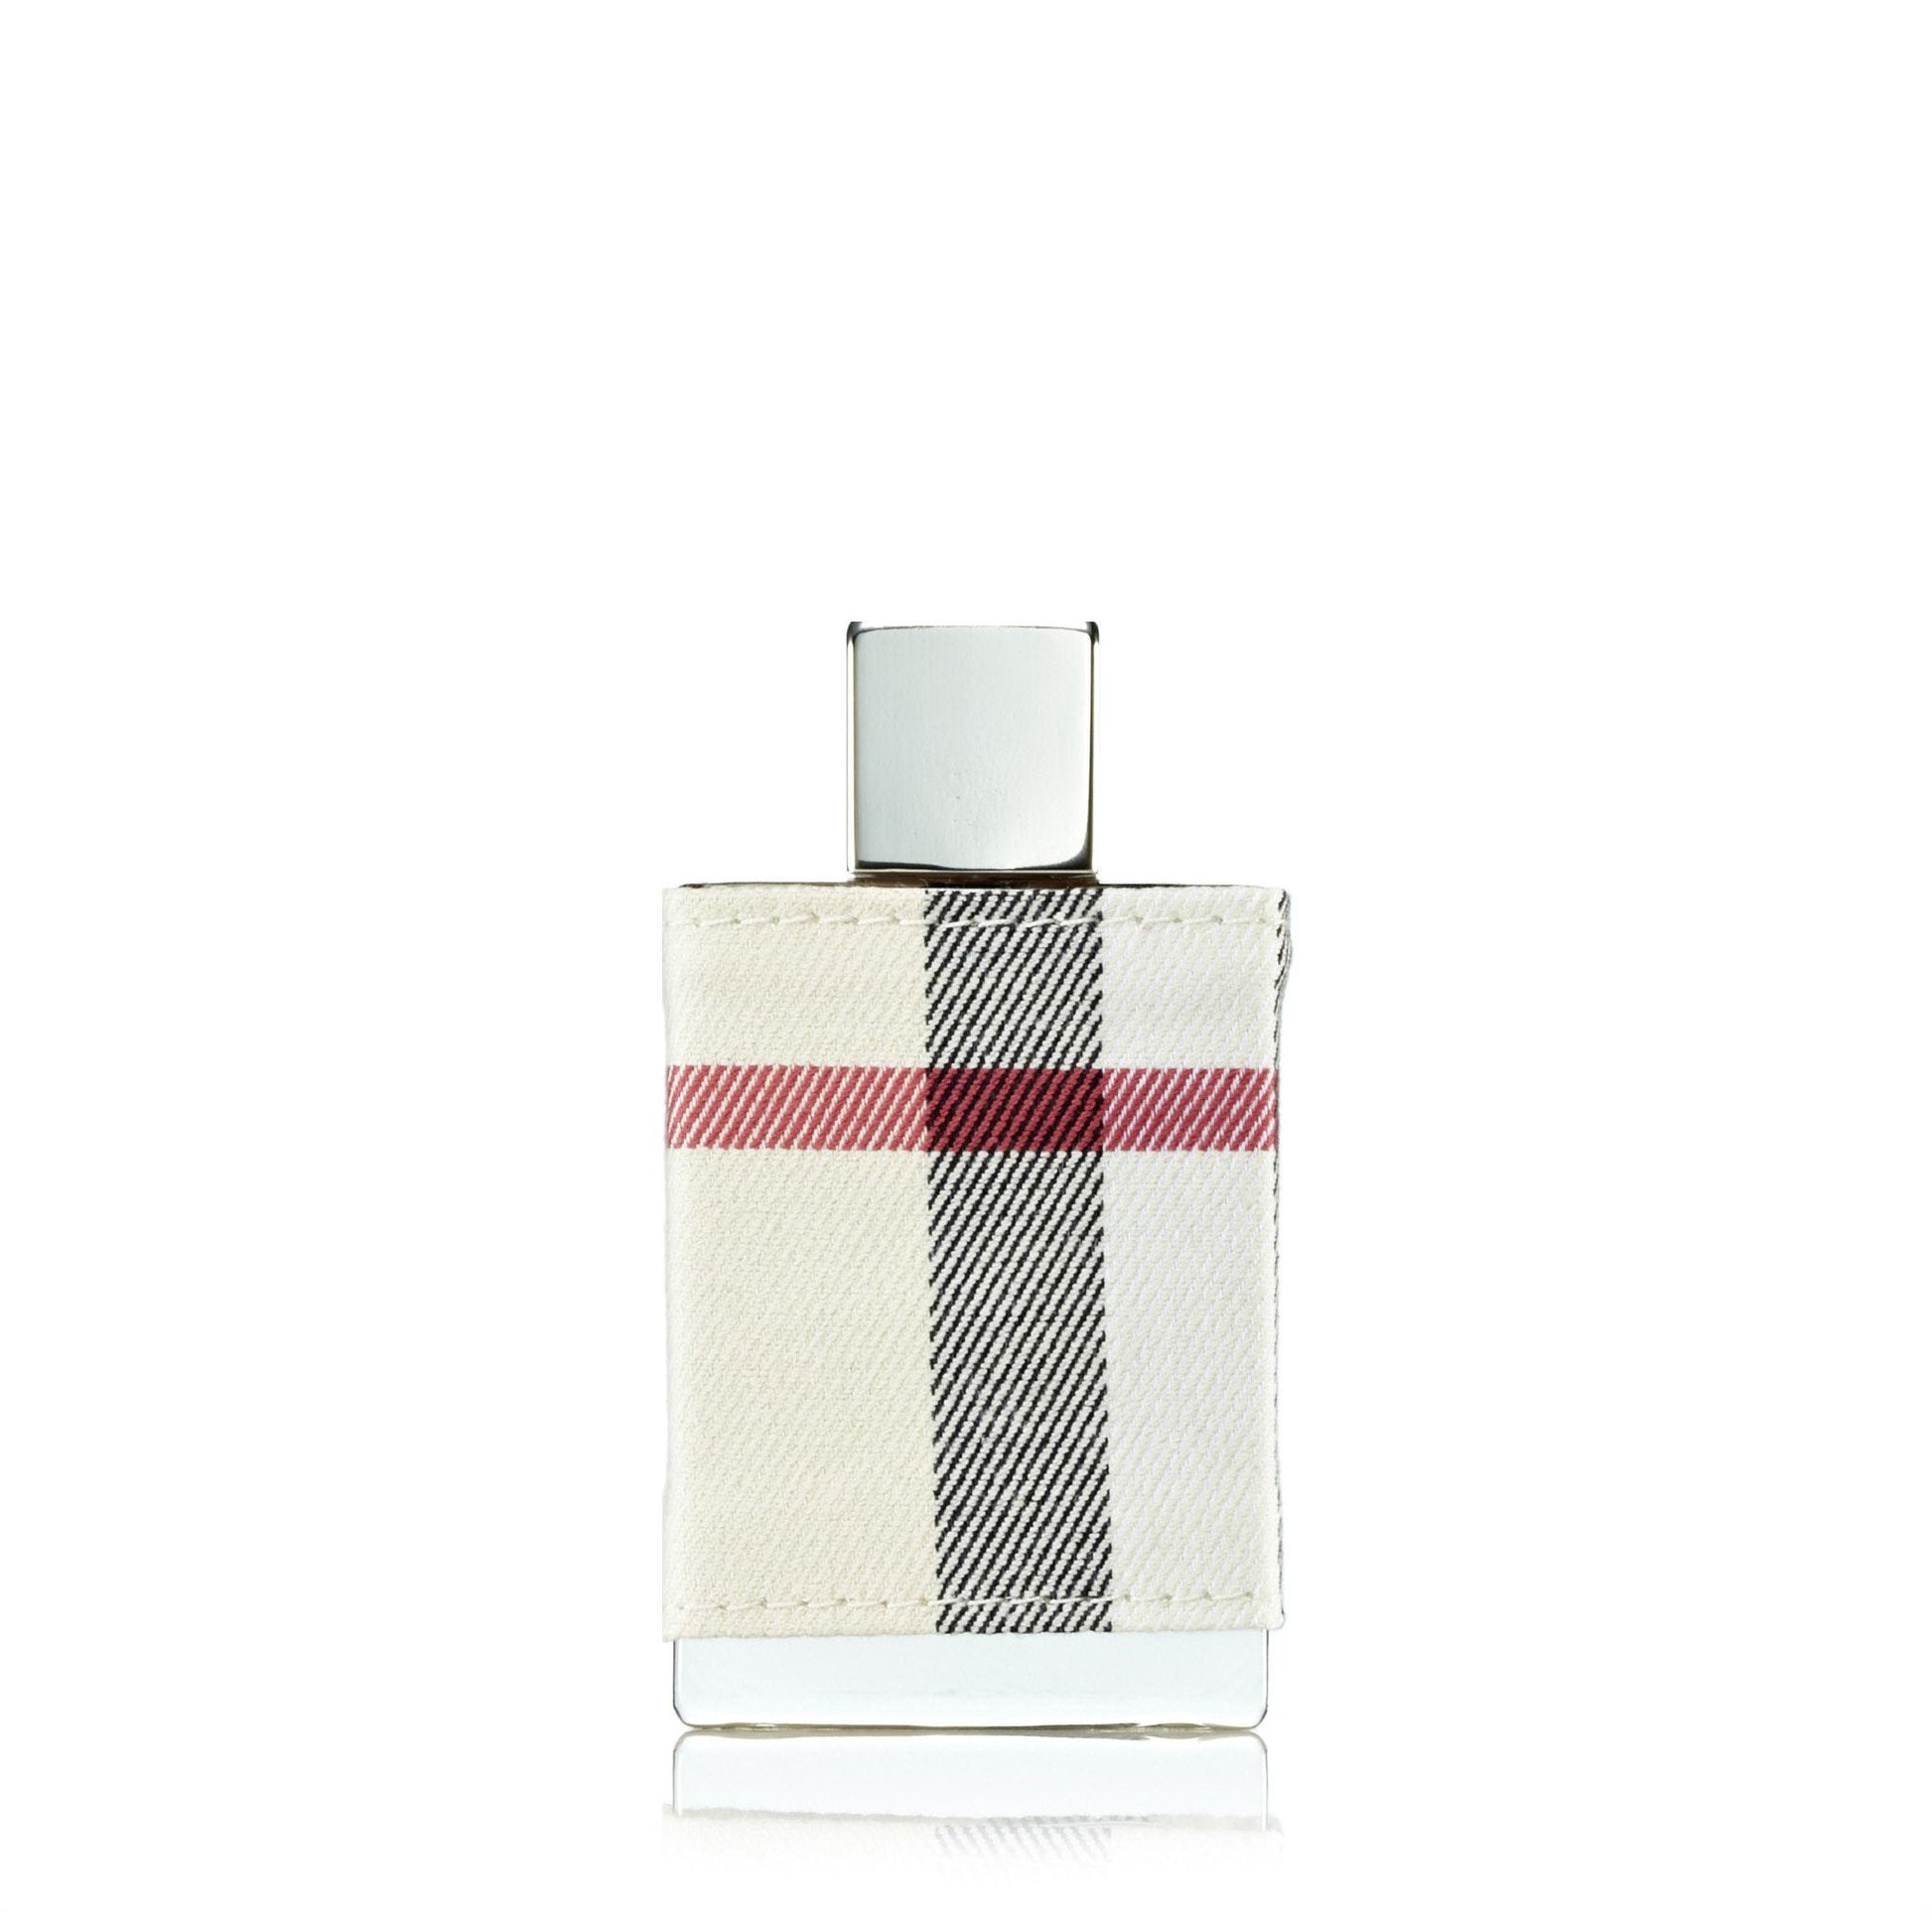 London Eau de Parfum Spray for Women by Burberry, Product image 7